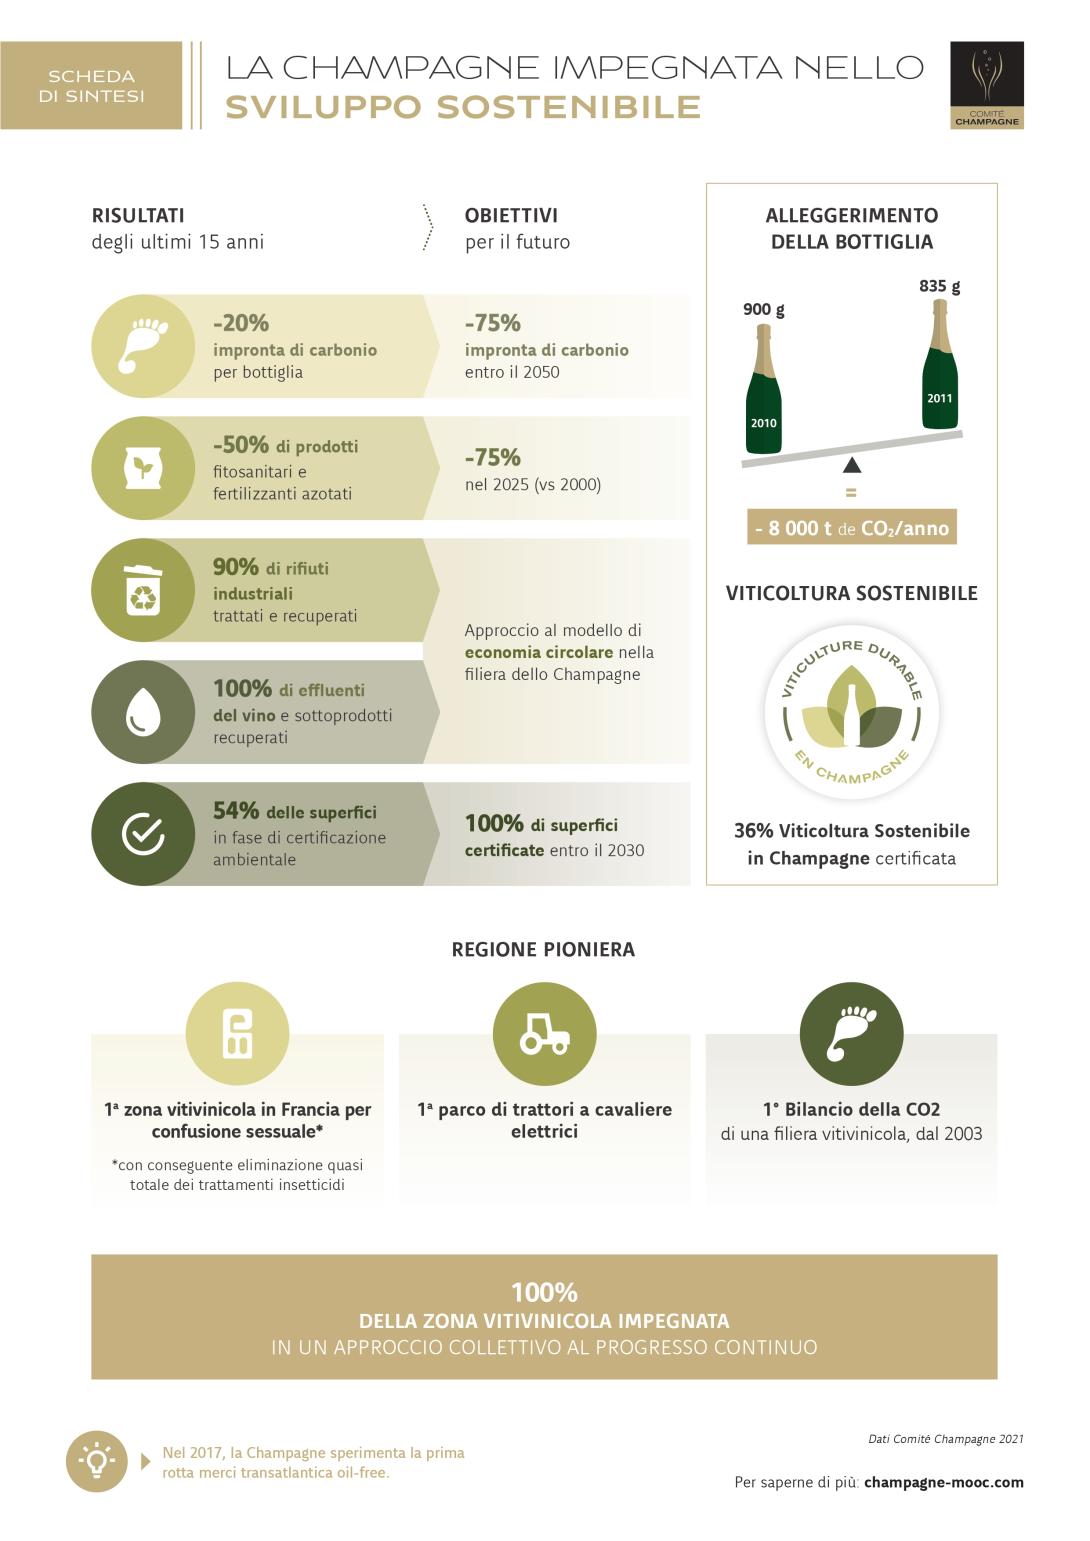 Lo sviluppo sostenibile nello Champagne